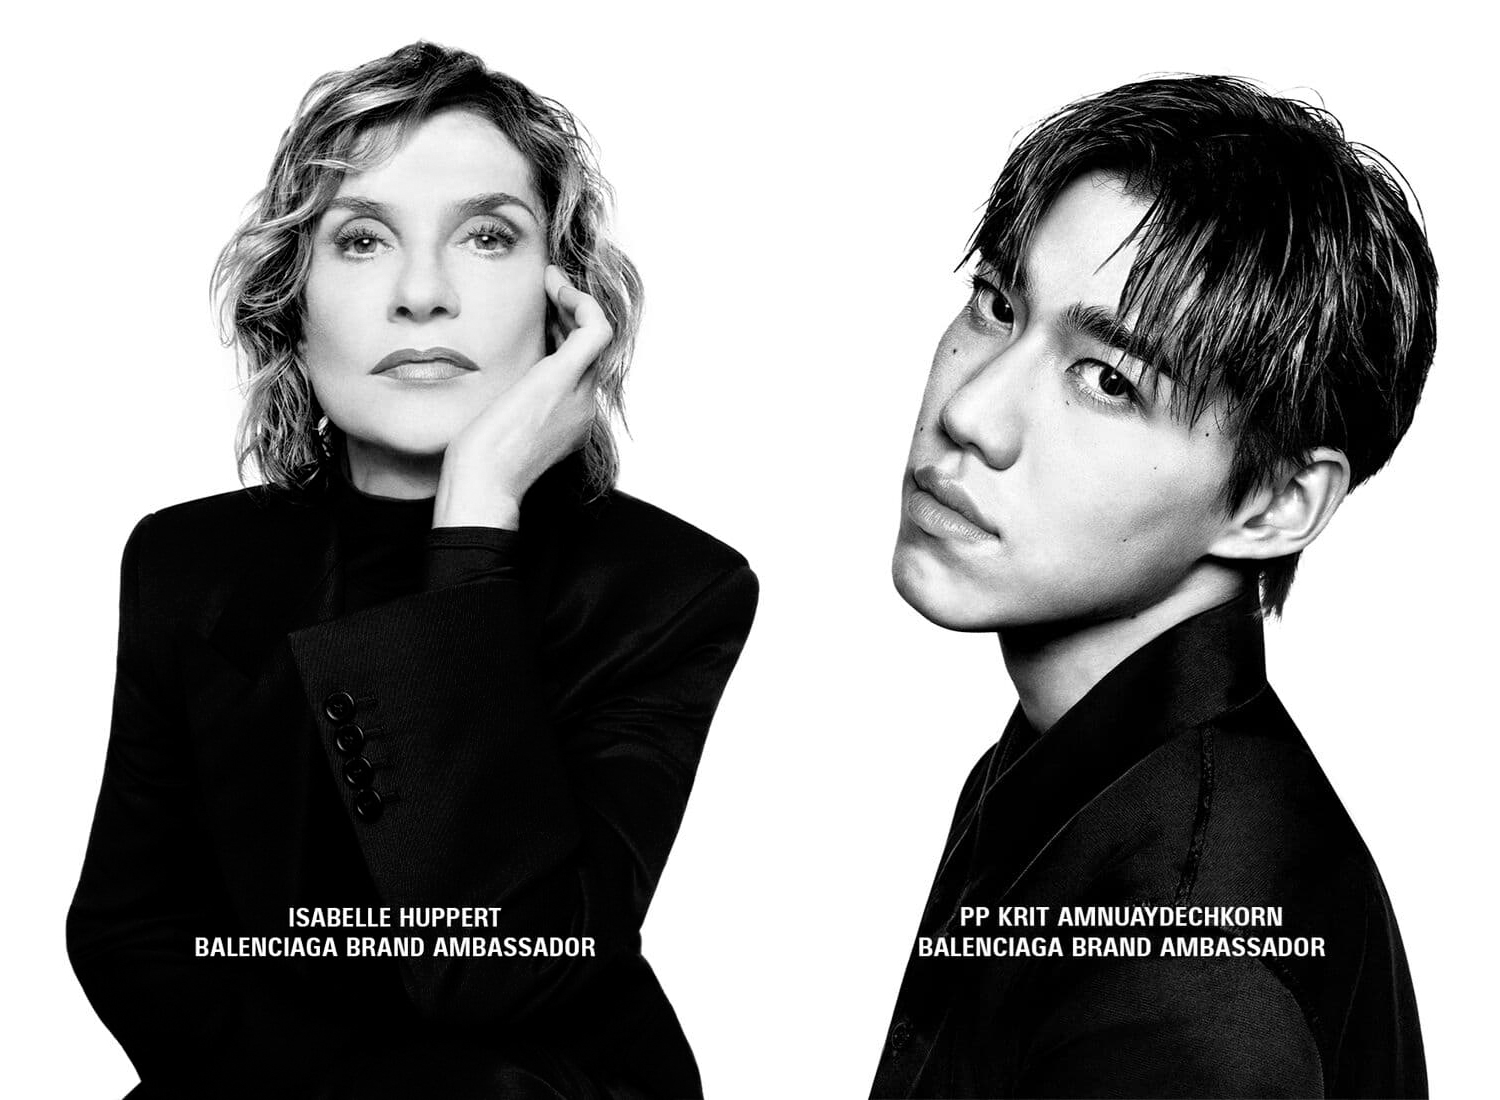 Isabelle Huppert and PP Krit Amnuaydechkorn emerge as Balenciaga's first-ever brand ambassadors